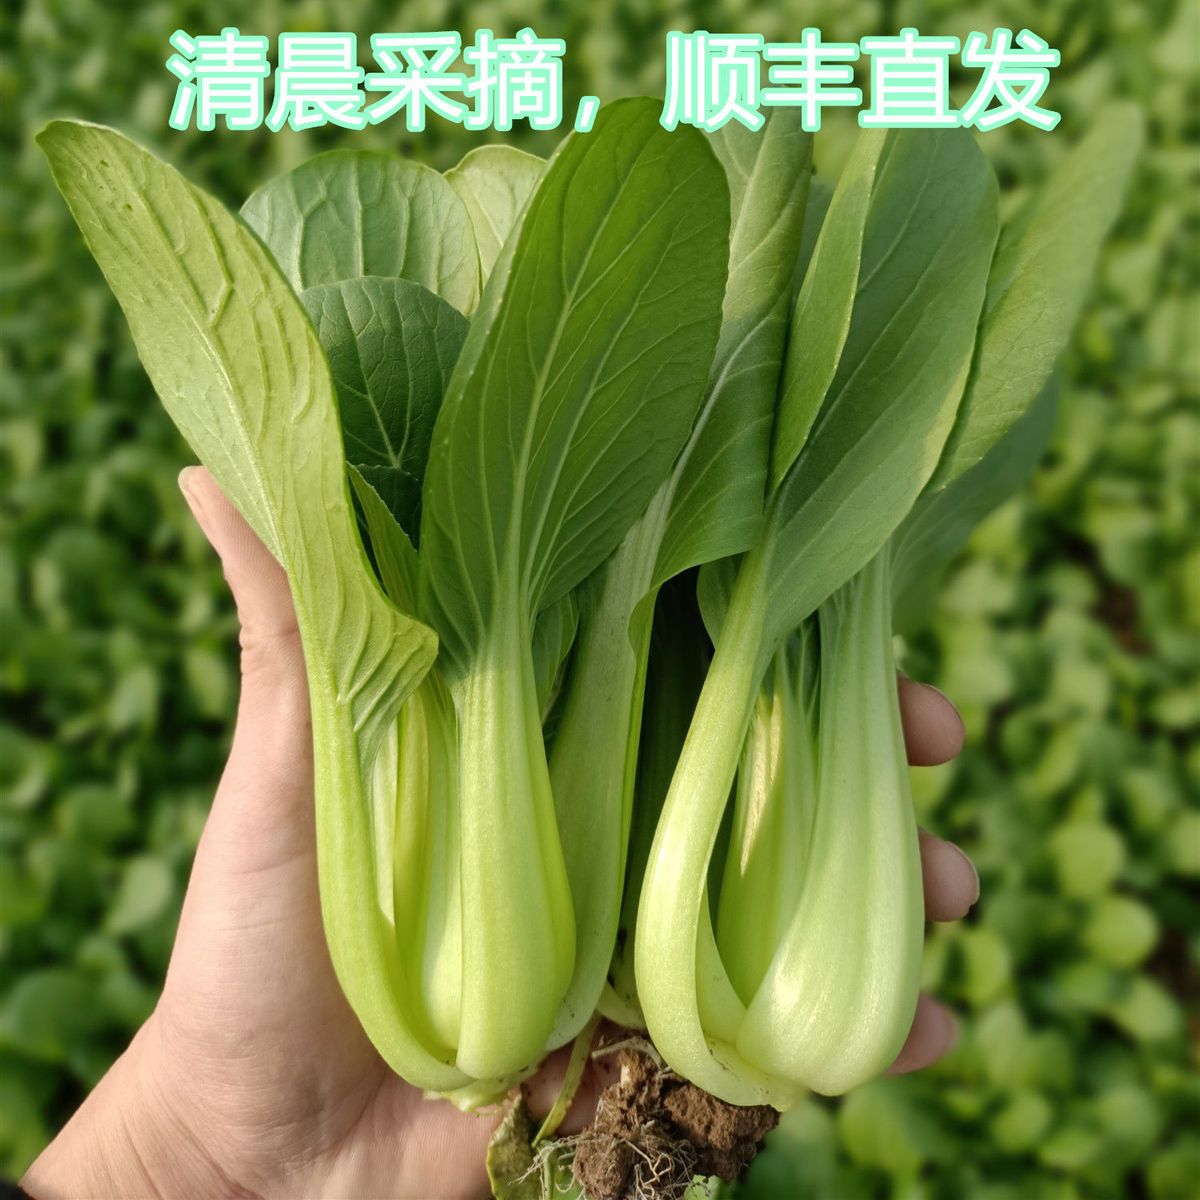 上海青油菜新鲜蔬菜现摘小油菜青菜应季蔬菜农家自种青菜顺丰包邮